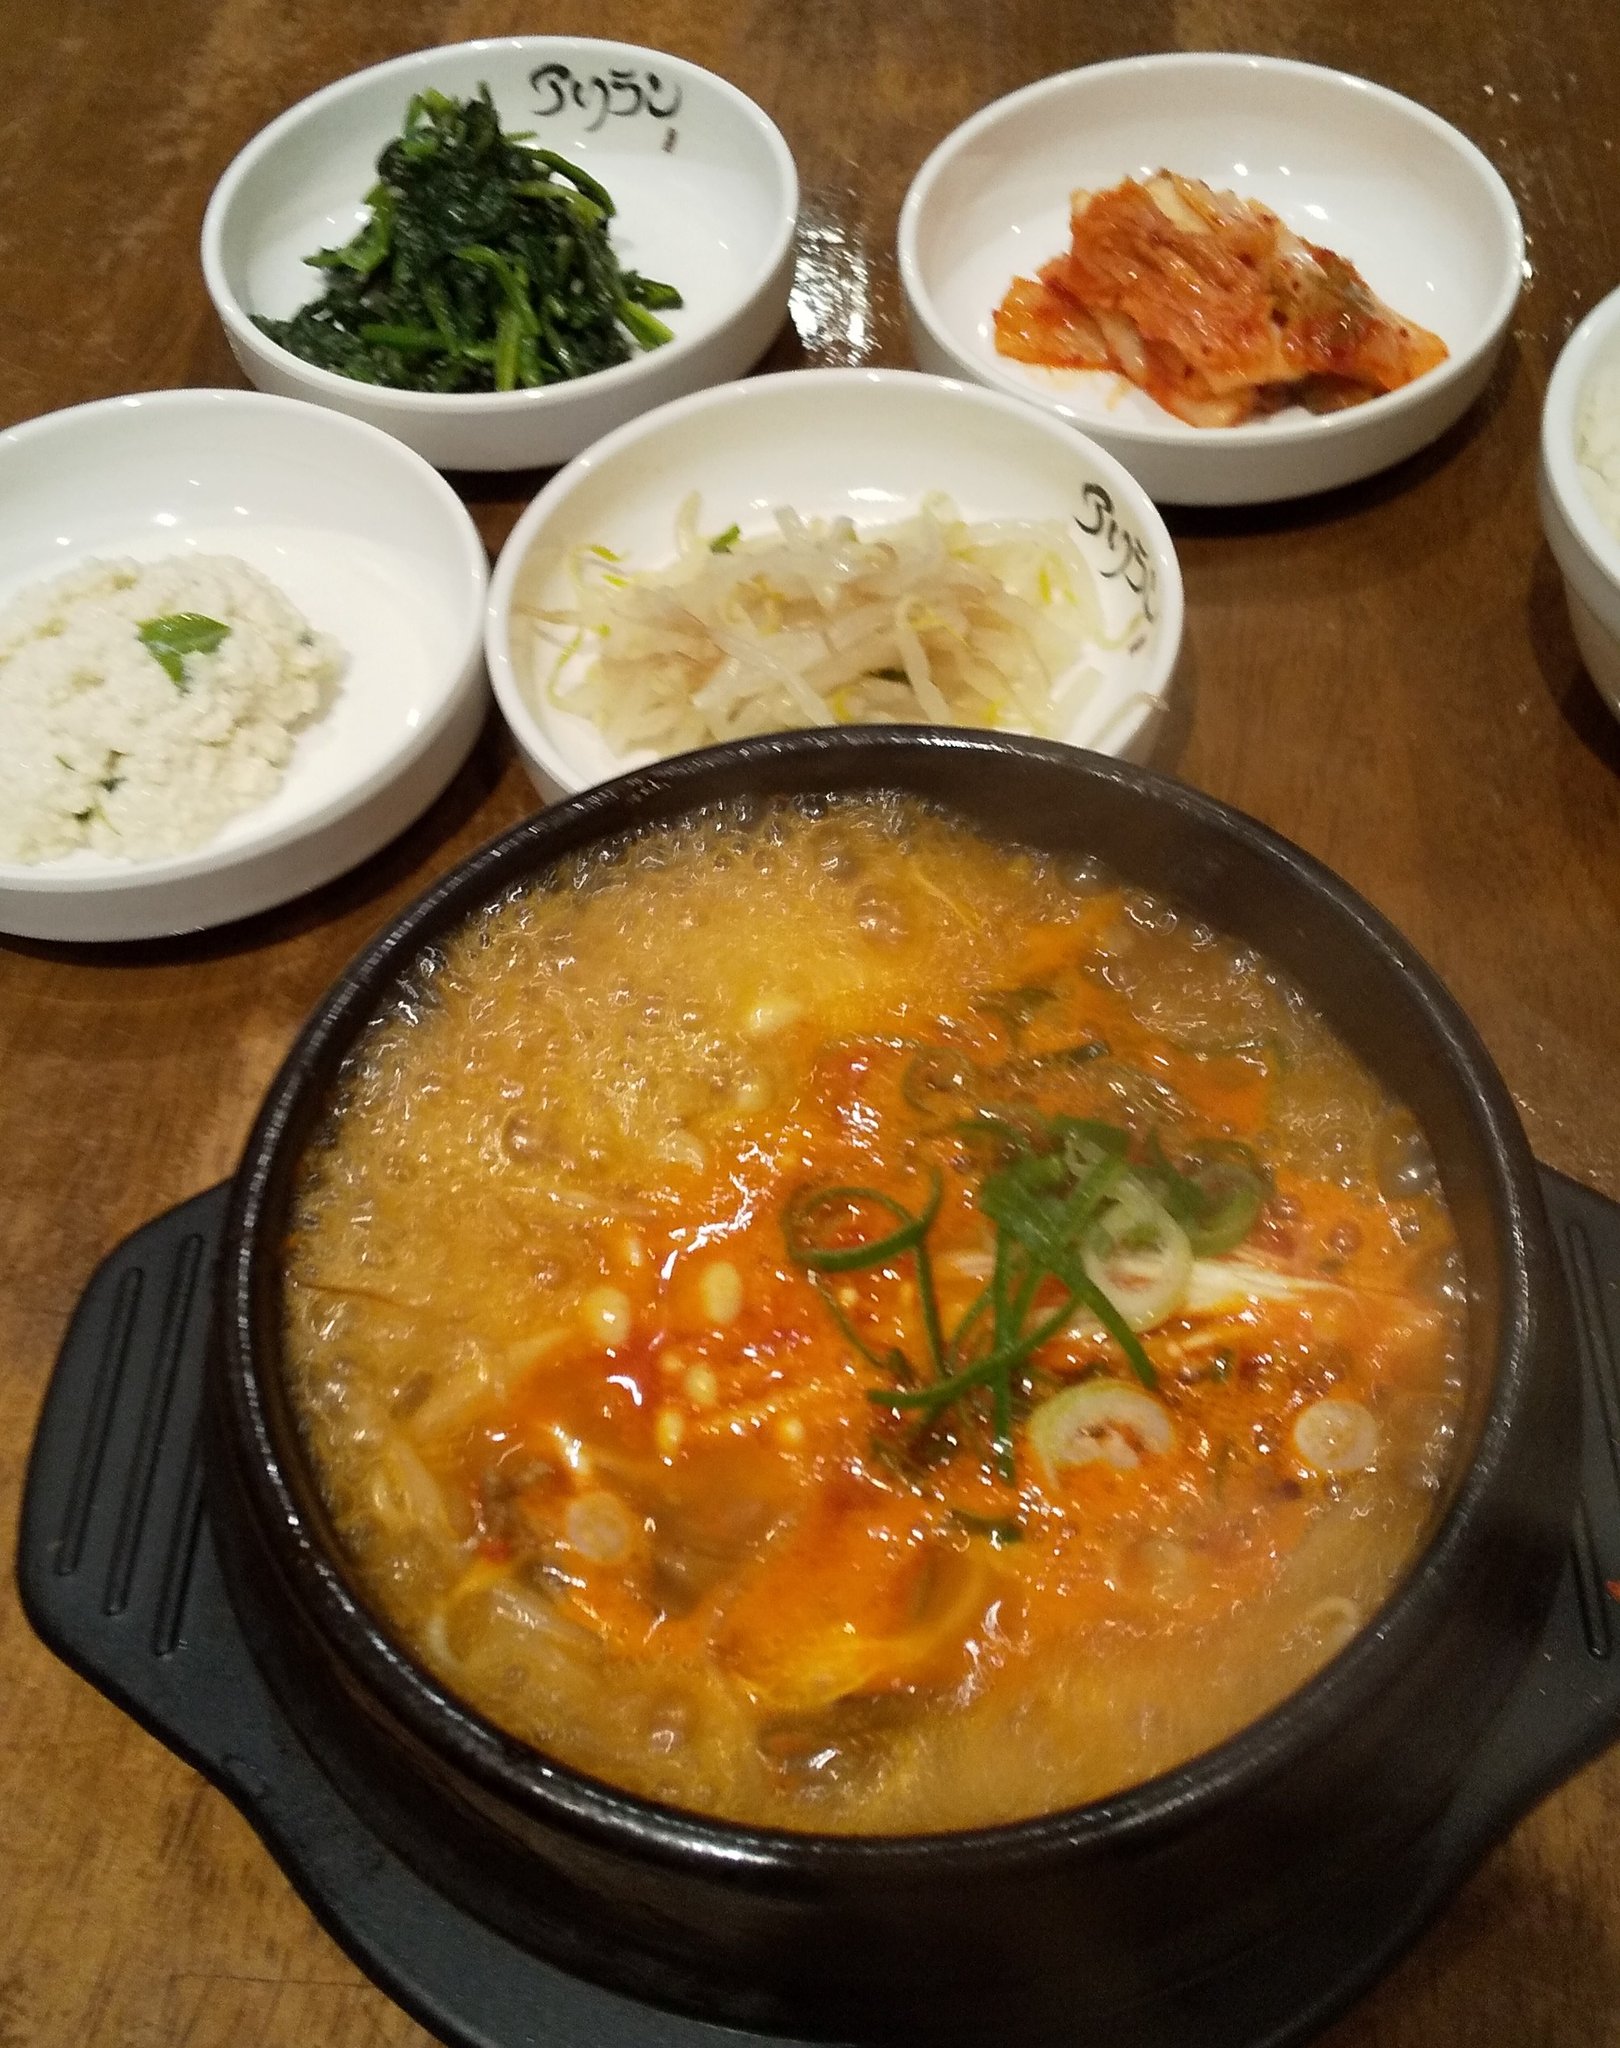 ミッフィー 大阪駅前第3ビルの アリラン でユッケジャン定食 梅田界隈では一番美味しい韓国料理店だと思う T Co Hfgo3q6rxf Twitter